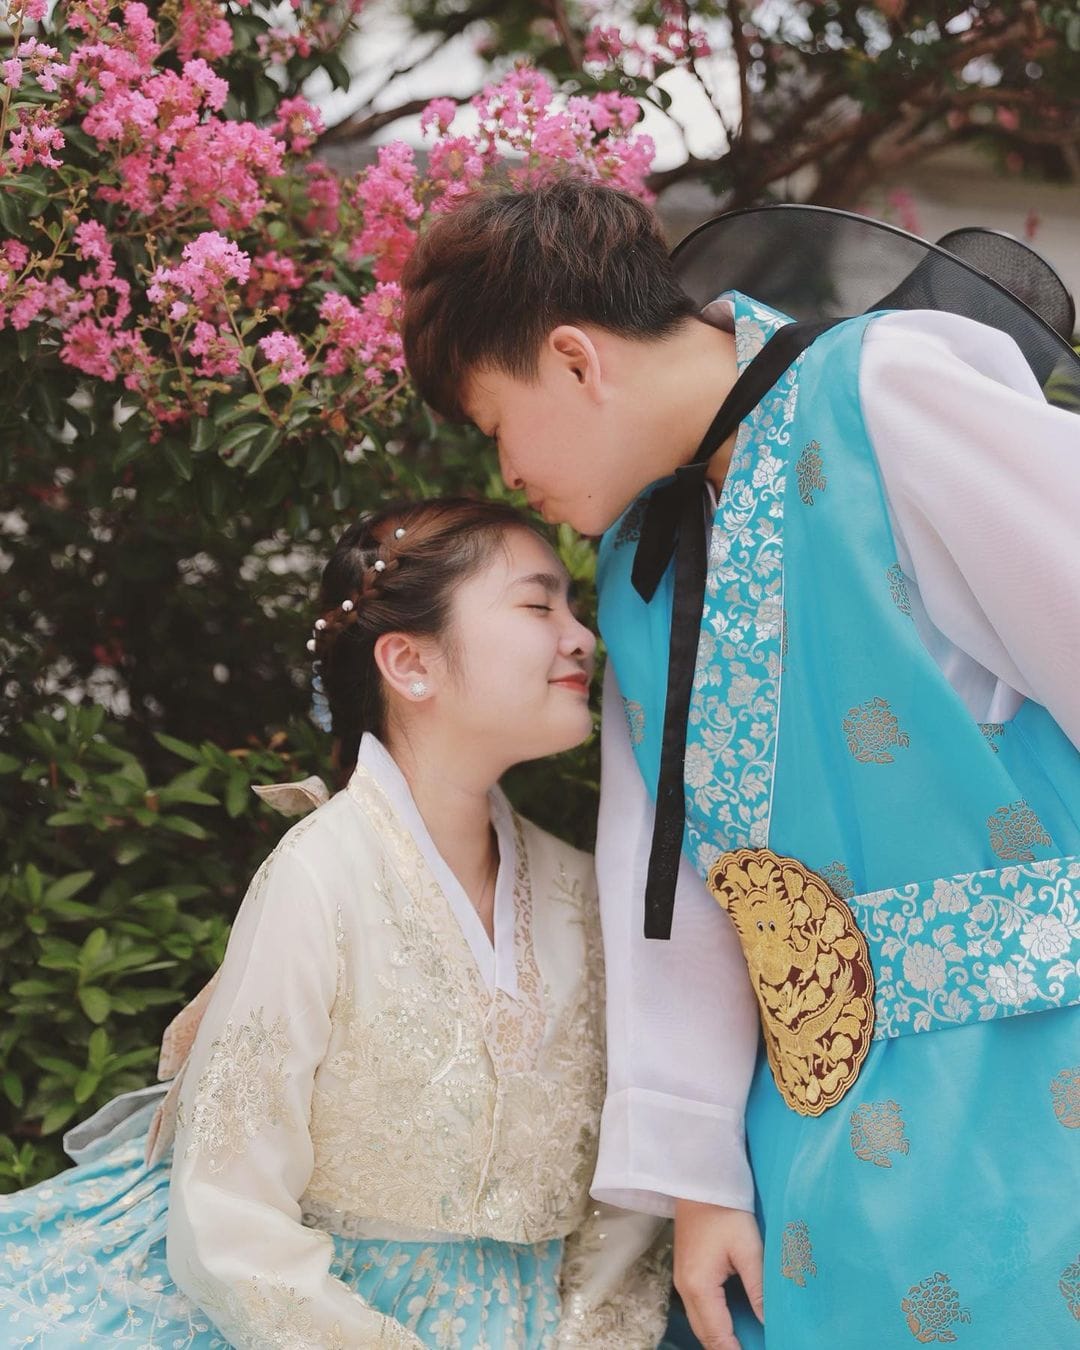 Mặc lùm xùm với gia đình, Thiện Nhân đăng ảnh ngọt 'như phim Hàn' bên người yêu đồng giới tại xứ sở kim chi - Ảnh 4